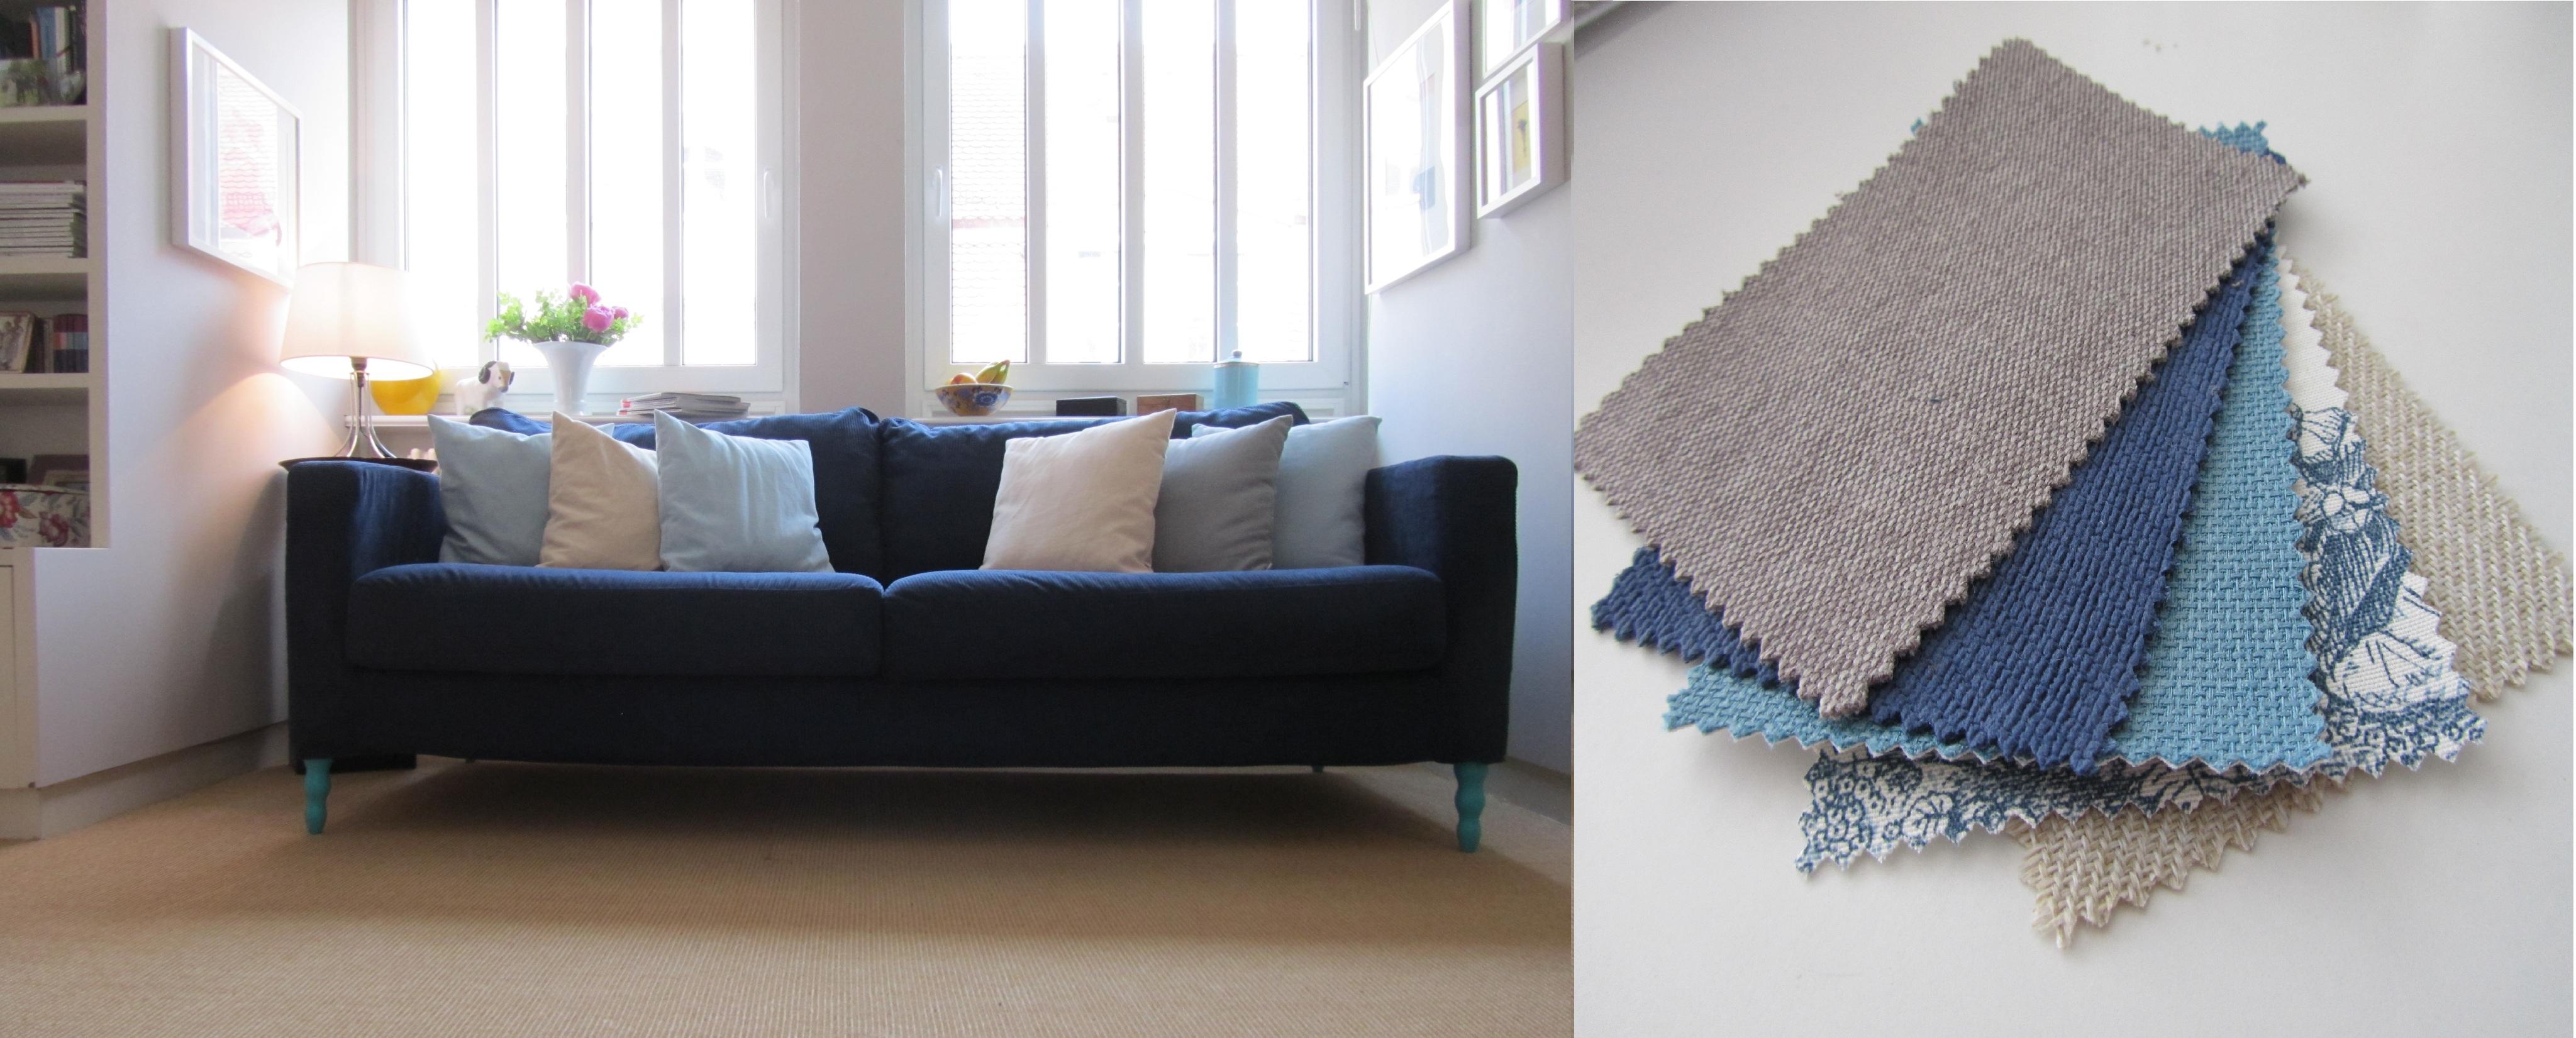 Das Wohnzimmer mit den Blautönen #sessel #kissen #vorhang #ikea ©Saustark Design GmbH